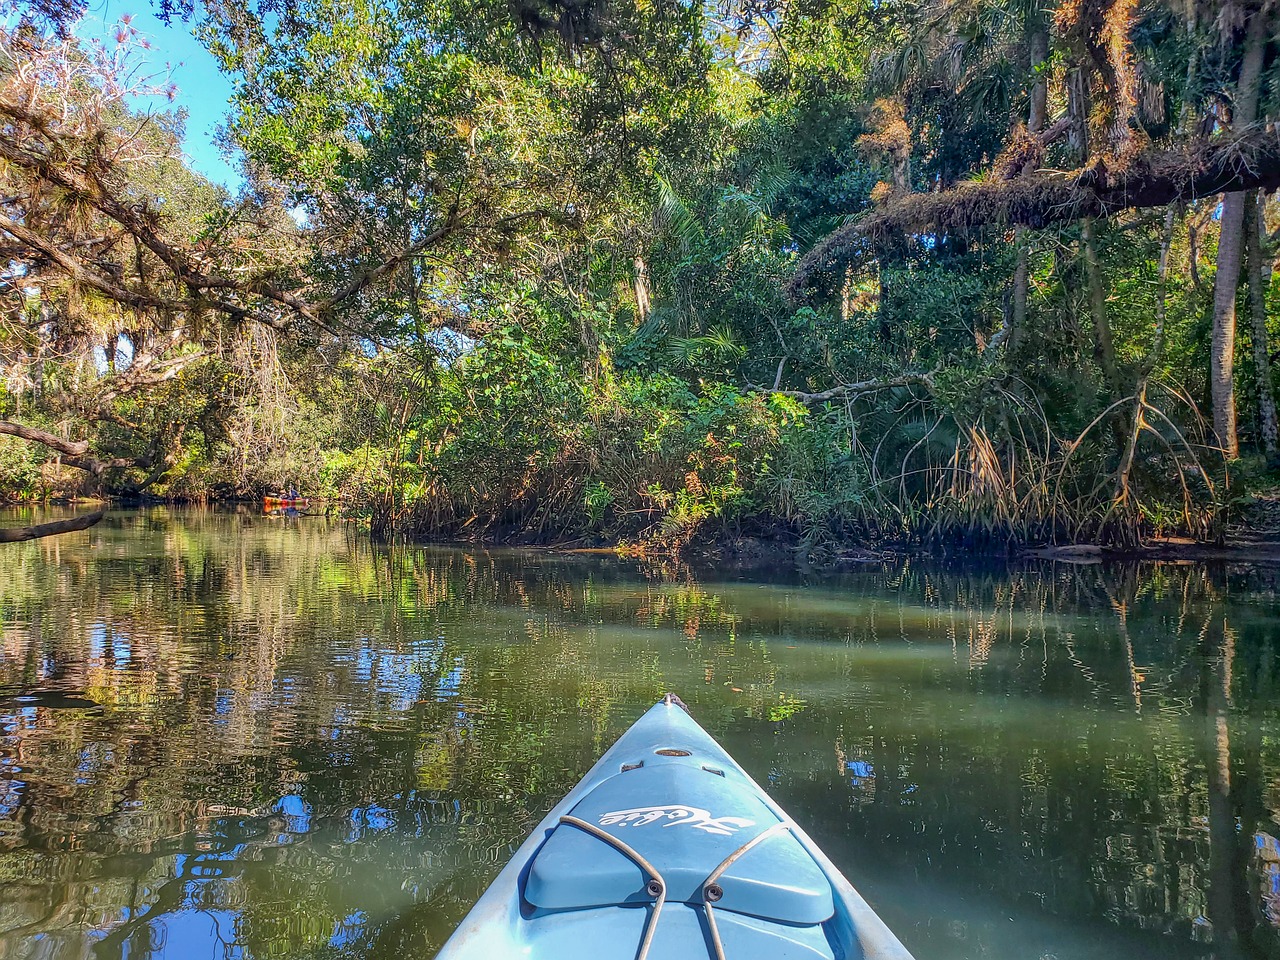 Kayak River. Черно белое фото байдарки на речке в лесу. Фруктовая река